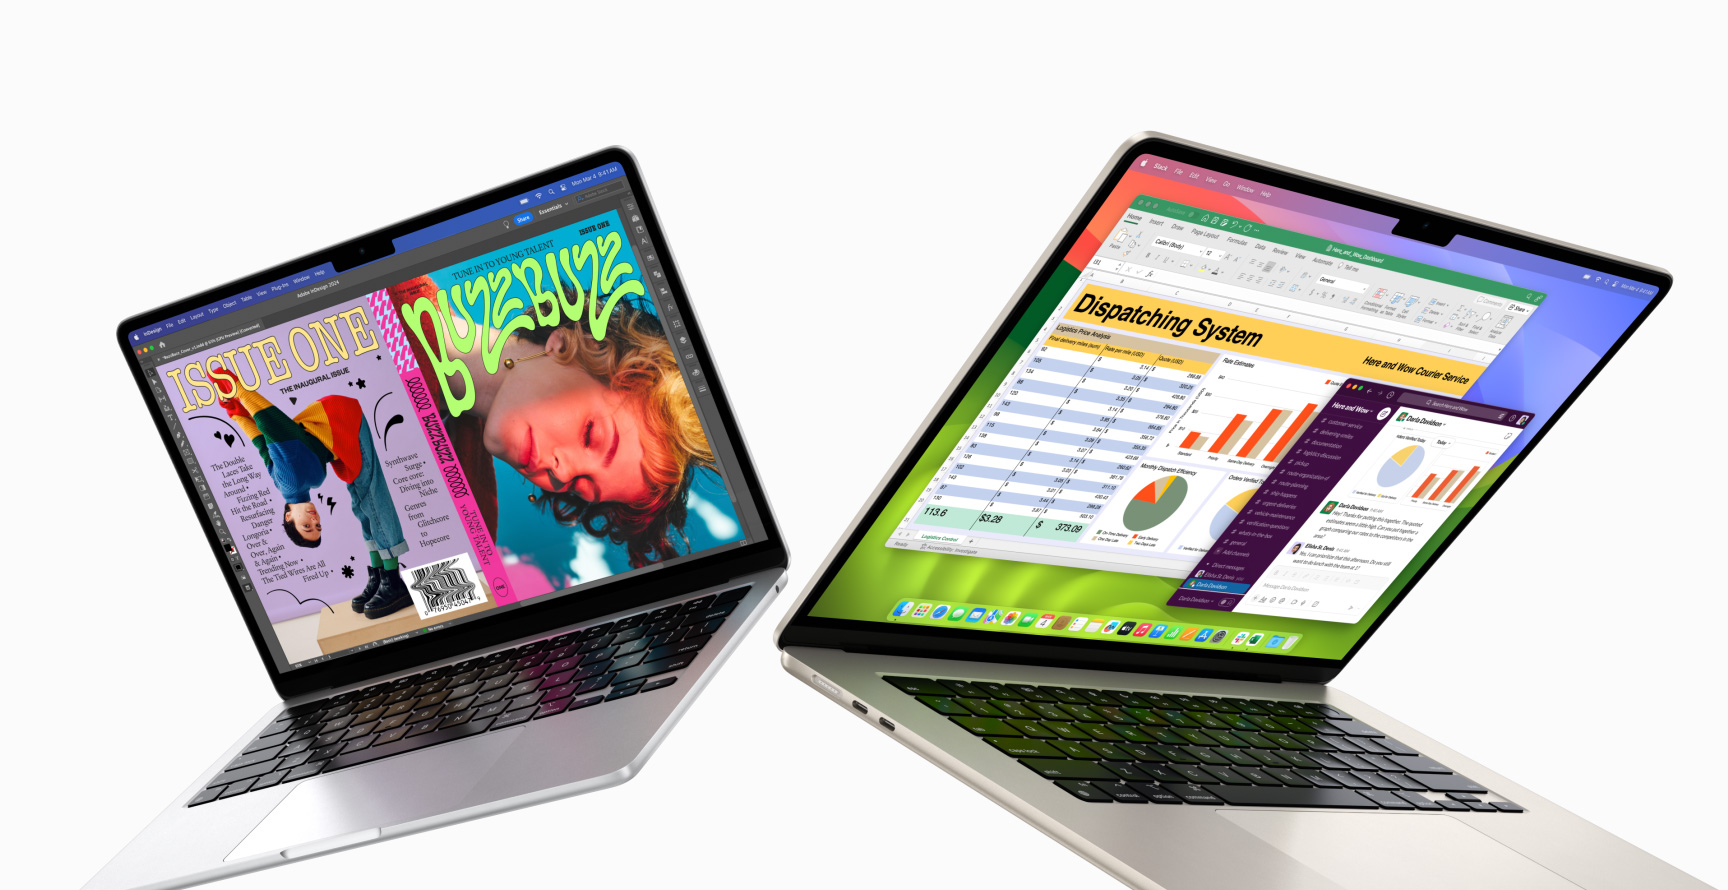 Un MacBook Air 13 pouces partiellement ouvert est placé à gauche et un MacBook Air 15 pouces partiellement ouvert est placé à droite. L’écran du 13 pouces affiche une couverture de magazine colorée créée avec In Design. L’écran du 15 pouces affiche Microsoft Excel et Slack.